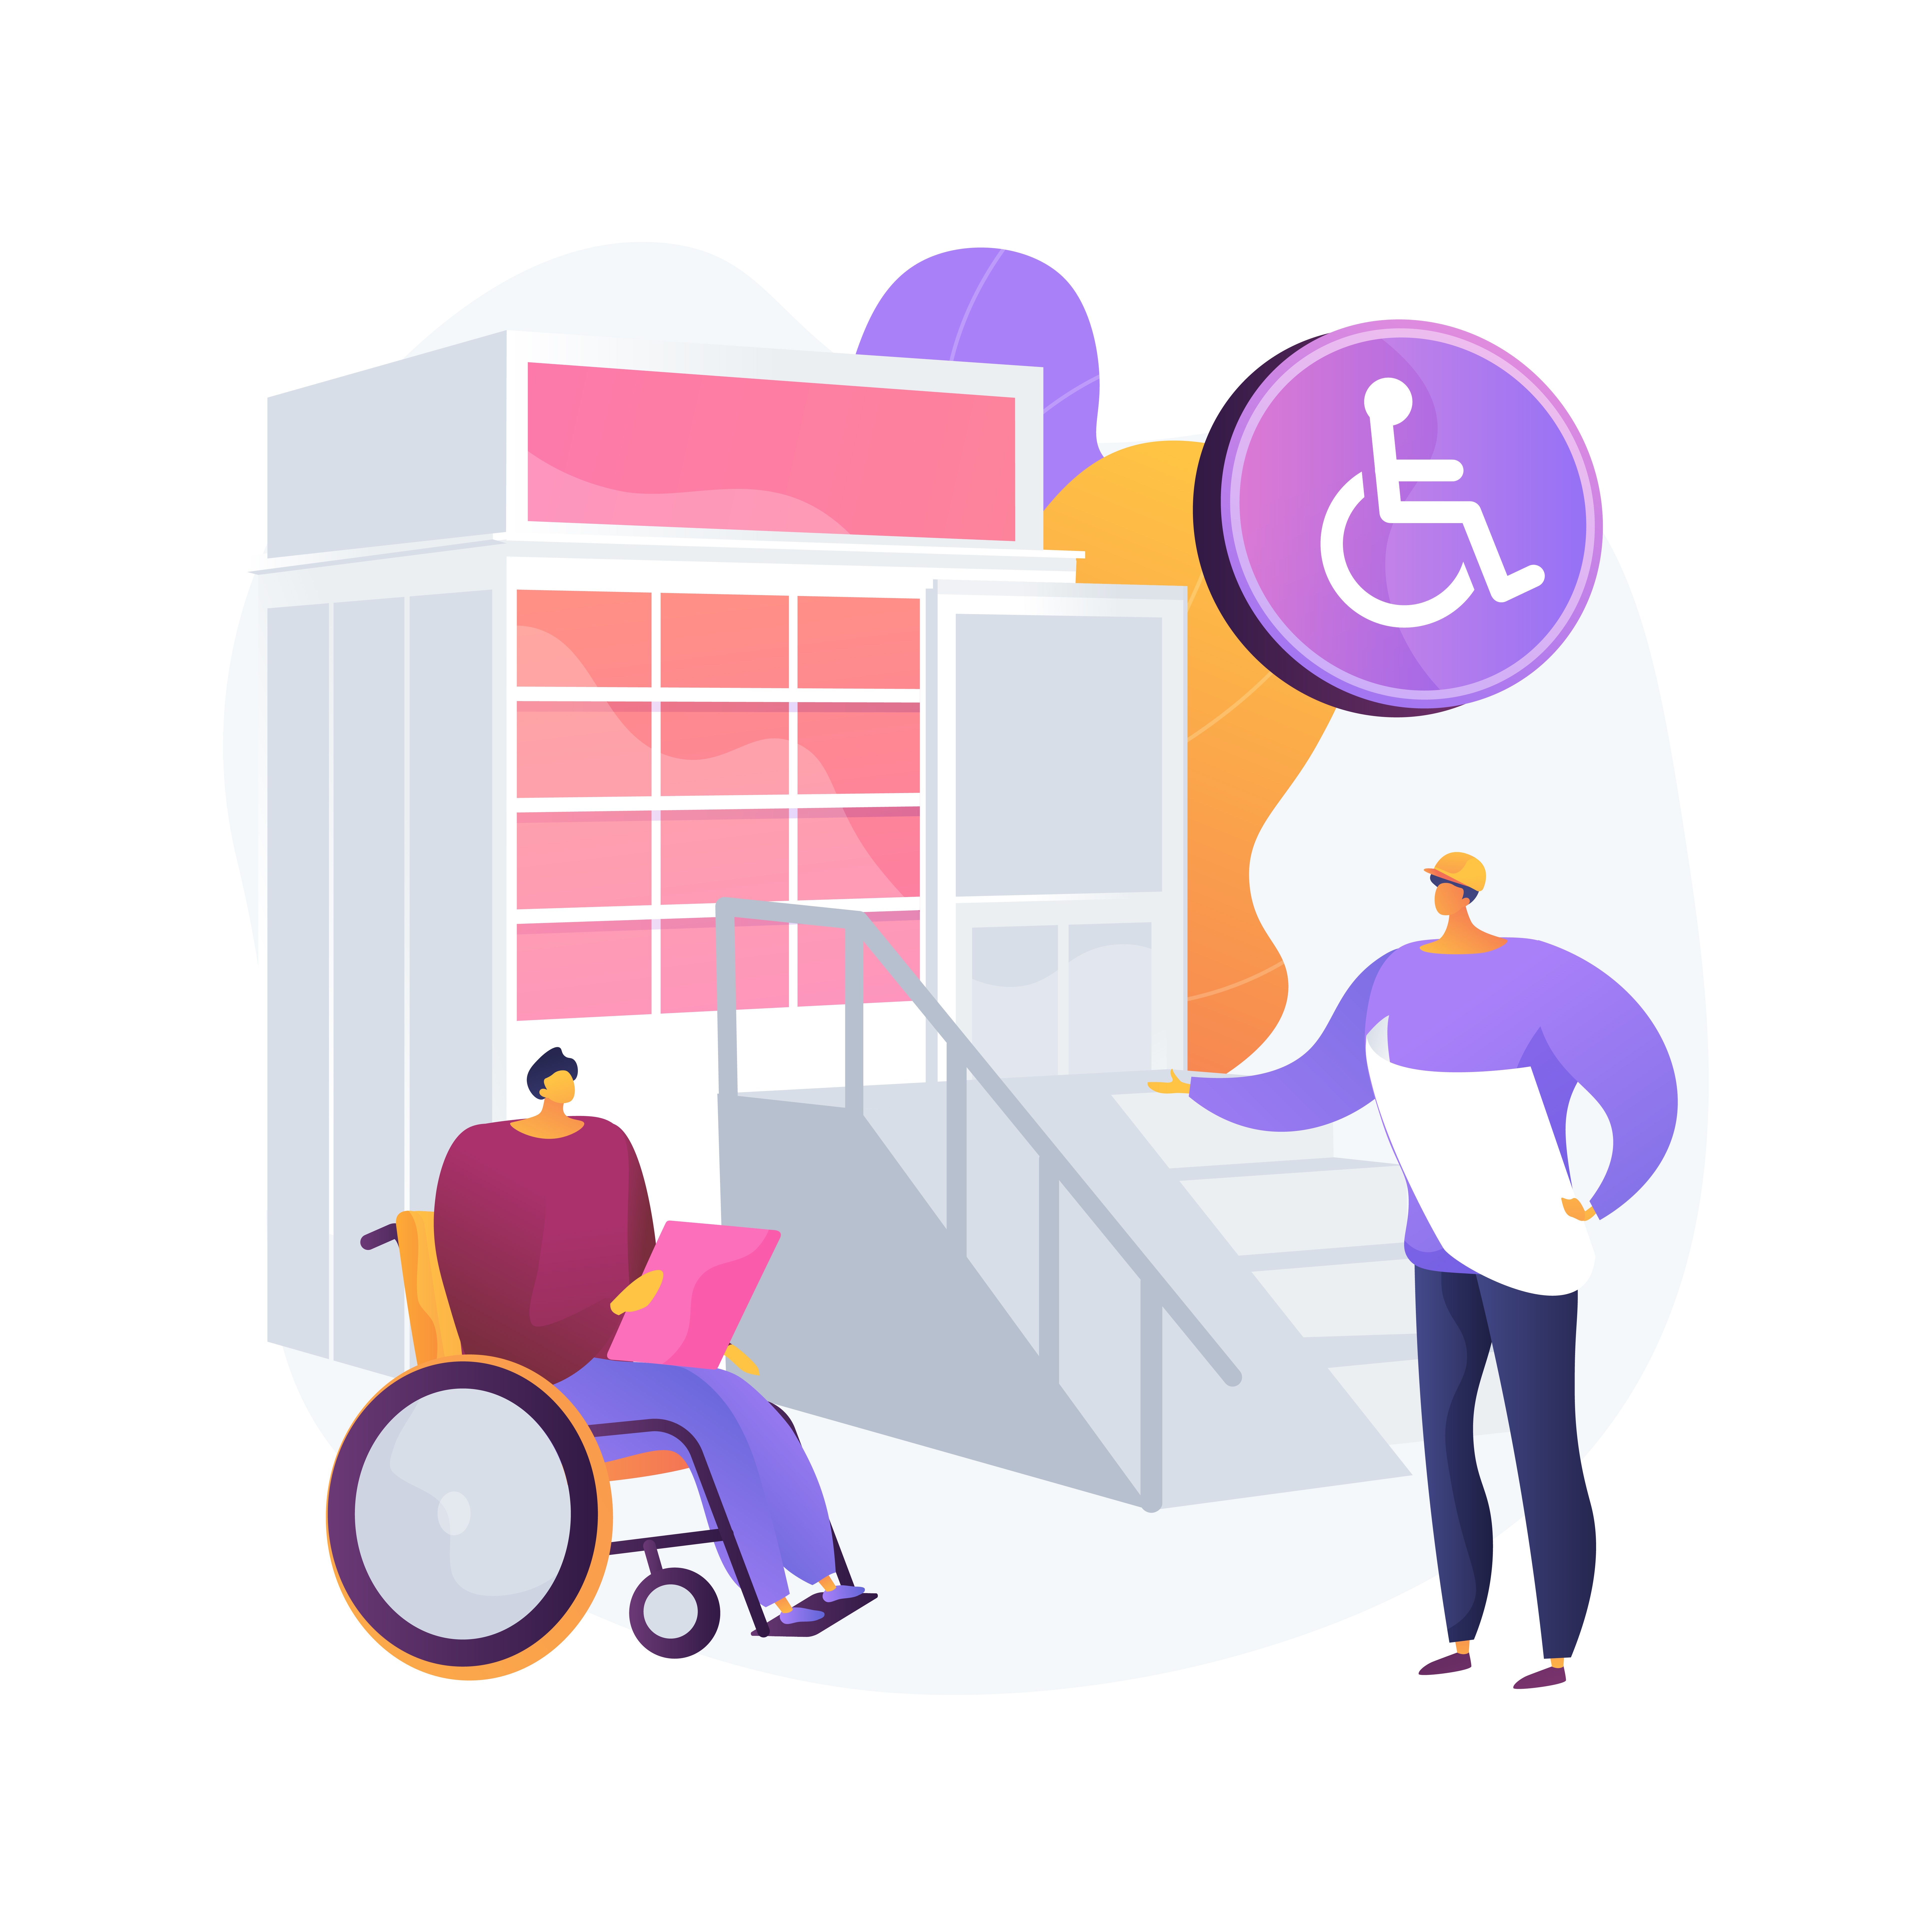 Accessibilità, Inclusione e Disabilità